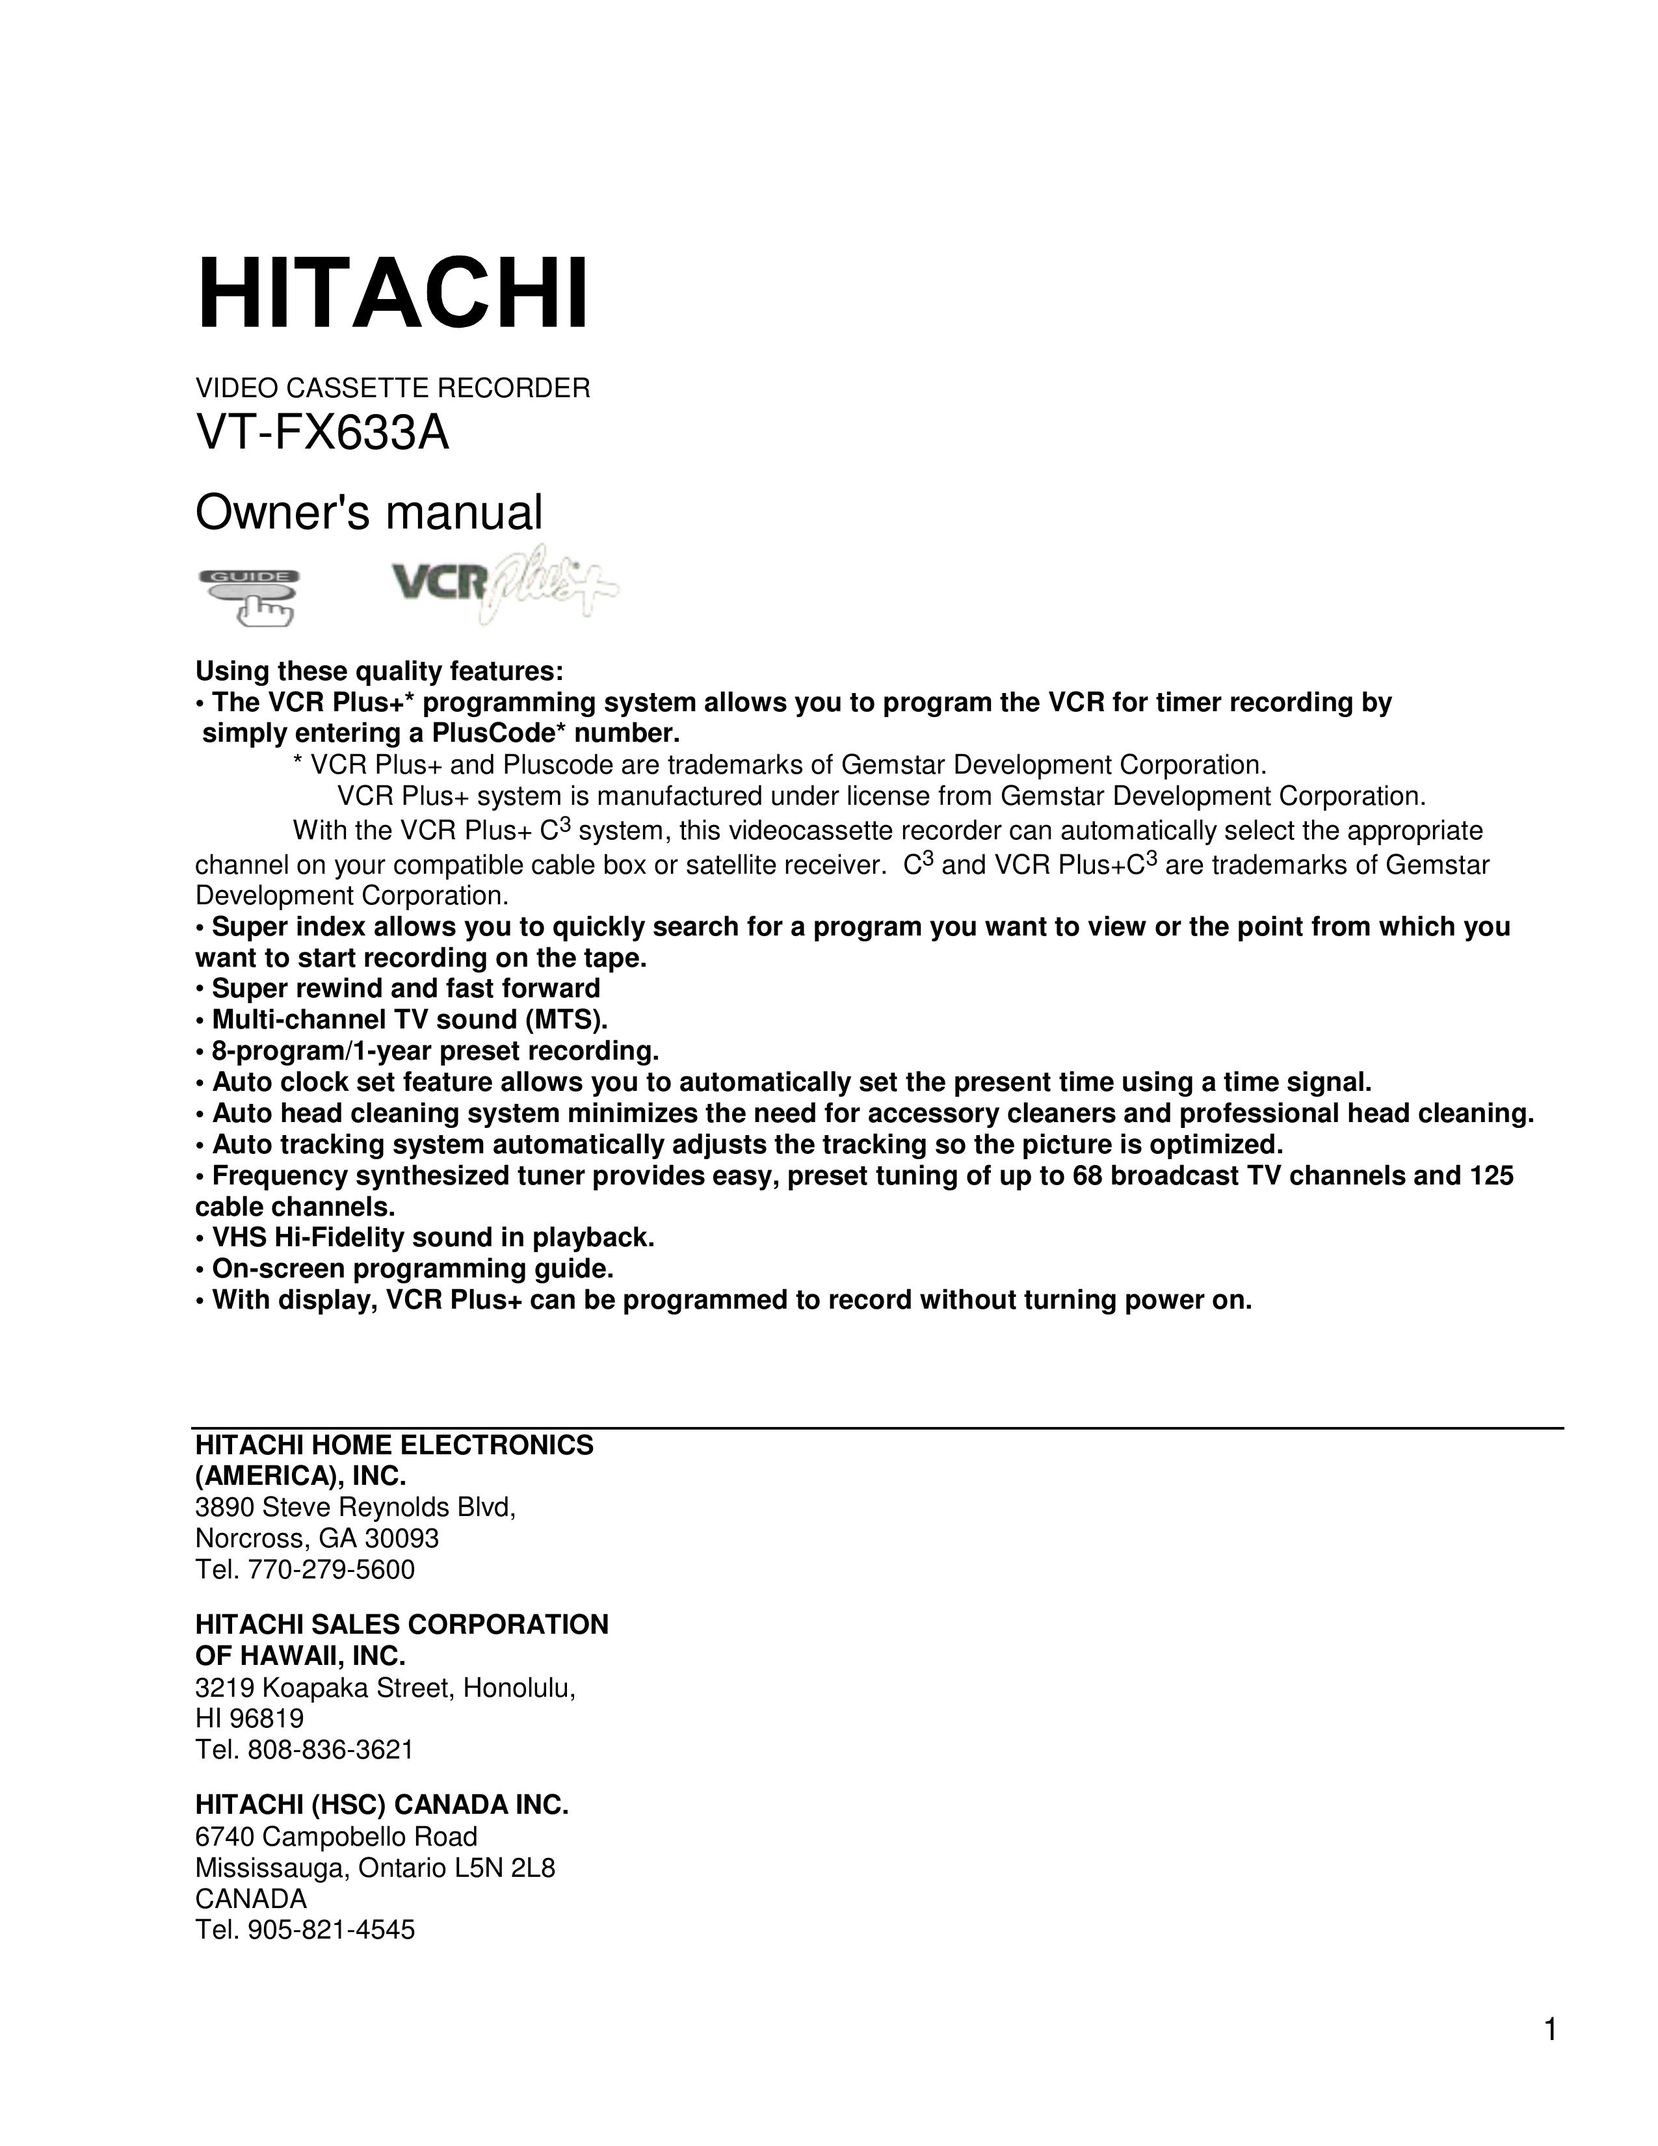 Hitachi VT-FX633A VCR User Manual